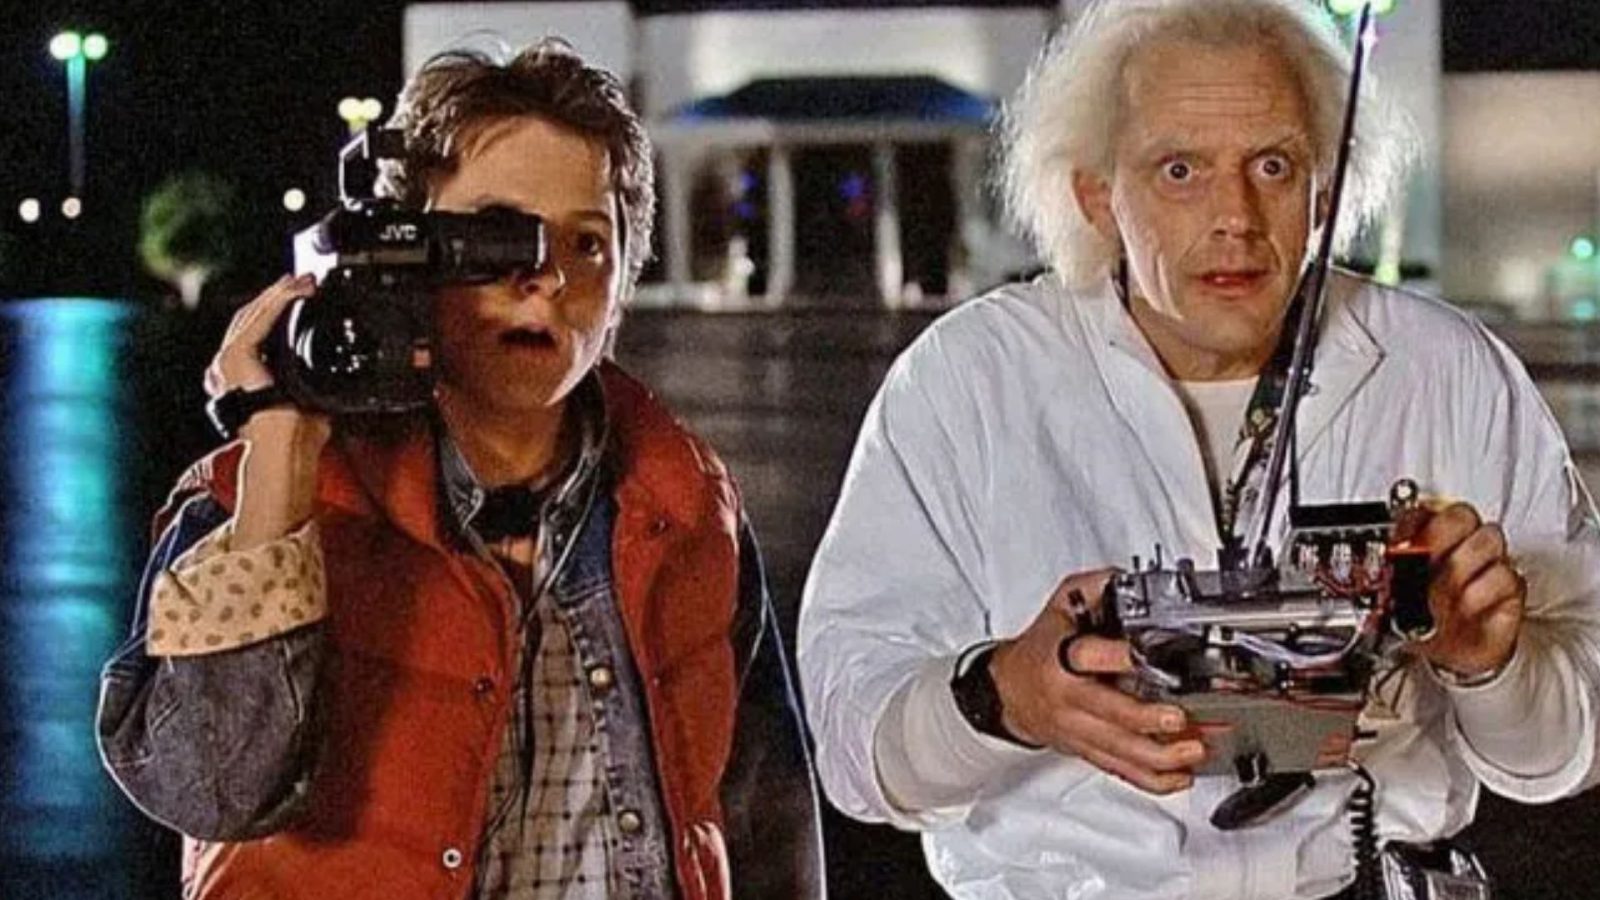 Volver al futuro: Marty McFly y el Doc Brown se reúnen vía Zoom - La Tercera